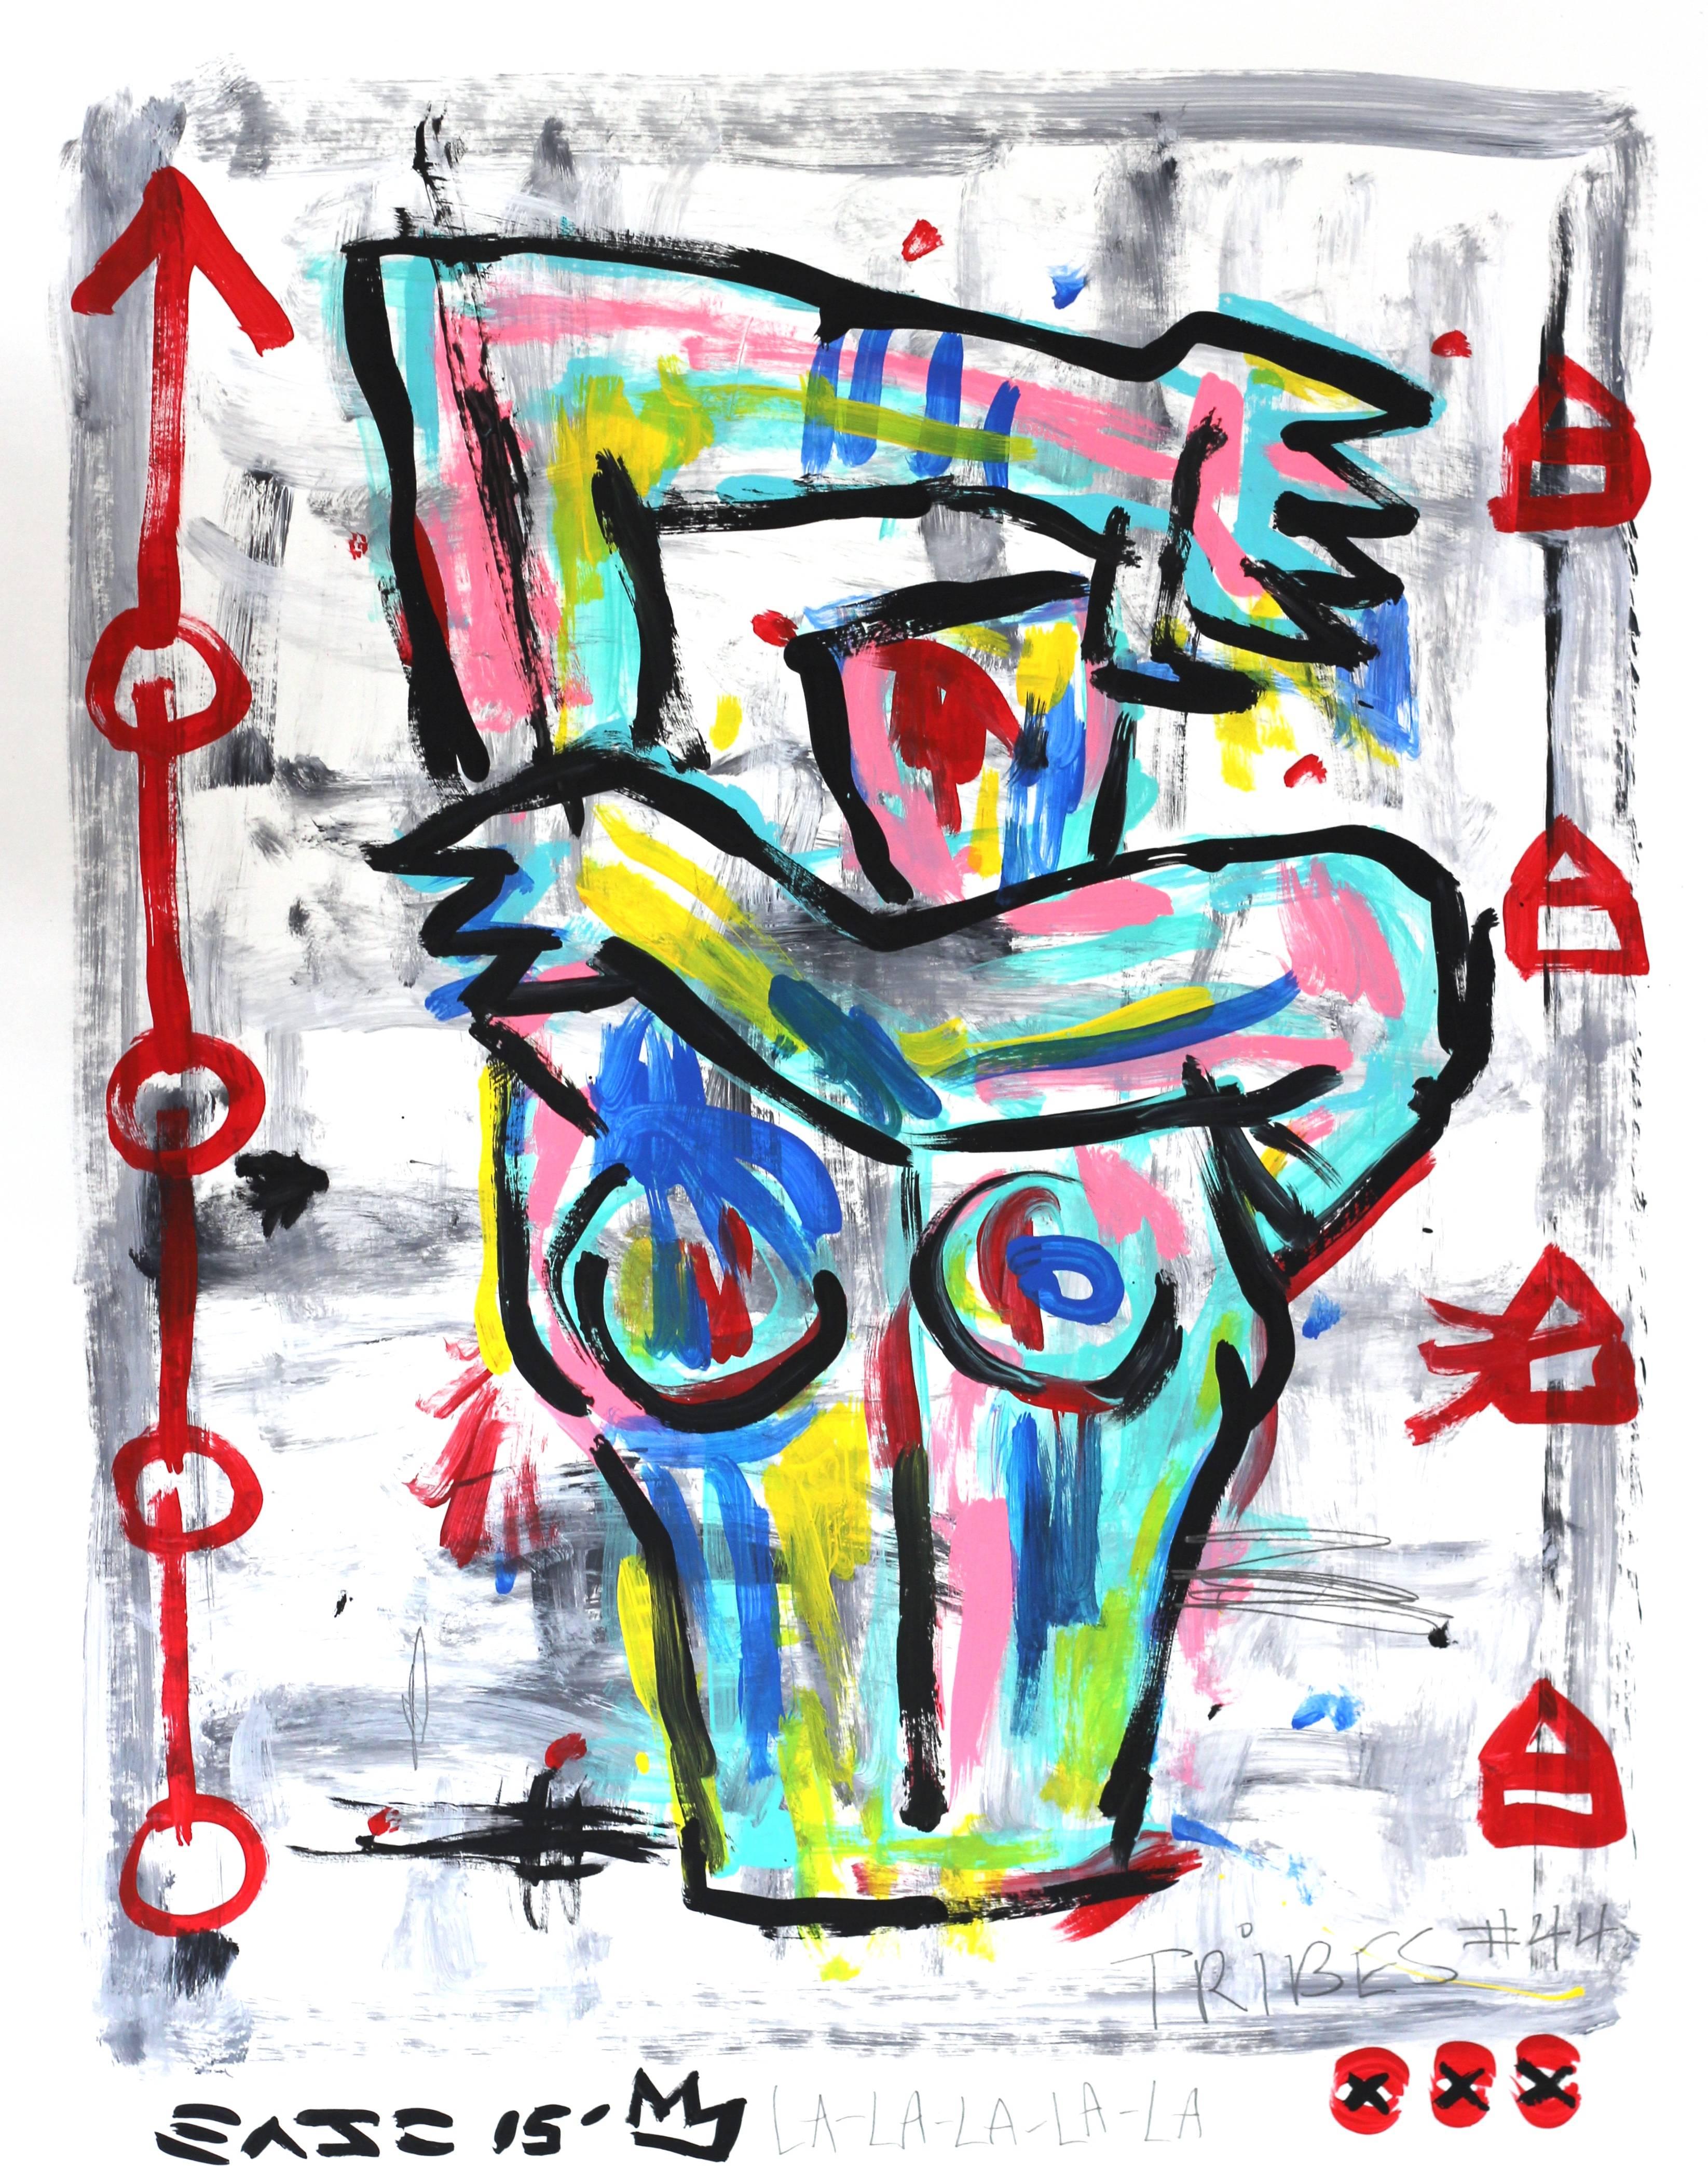 L'artiste de rue de Los Angeles Gary John a explosé sur la scène artistique internationale pour la première fois pendant Art Basel Miami en 2013. Le travail ludique et audacieux de John a rapidement attiré l'attention et il a été nommé l'un des